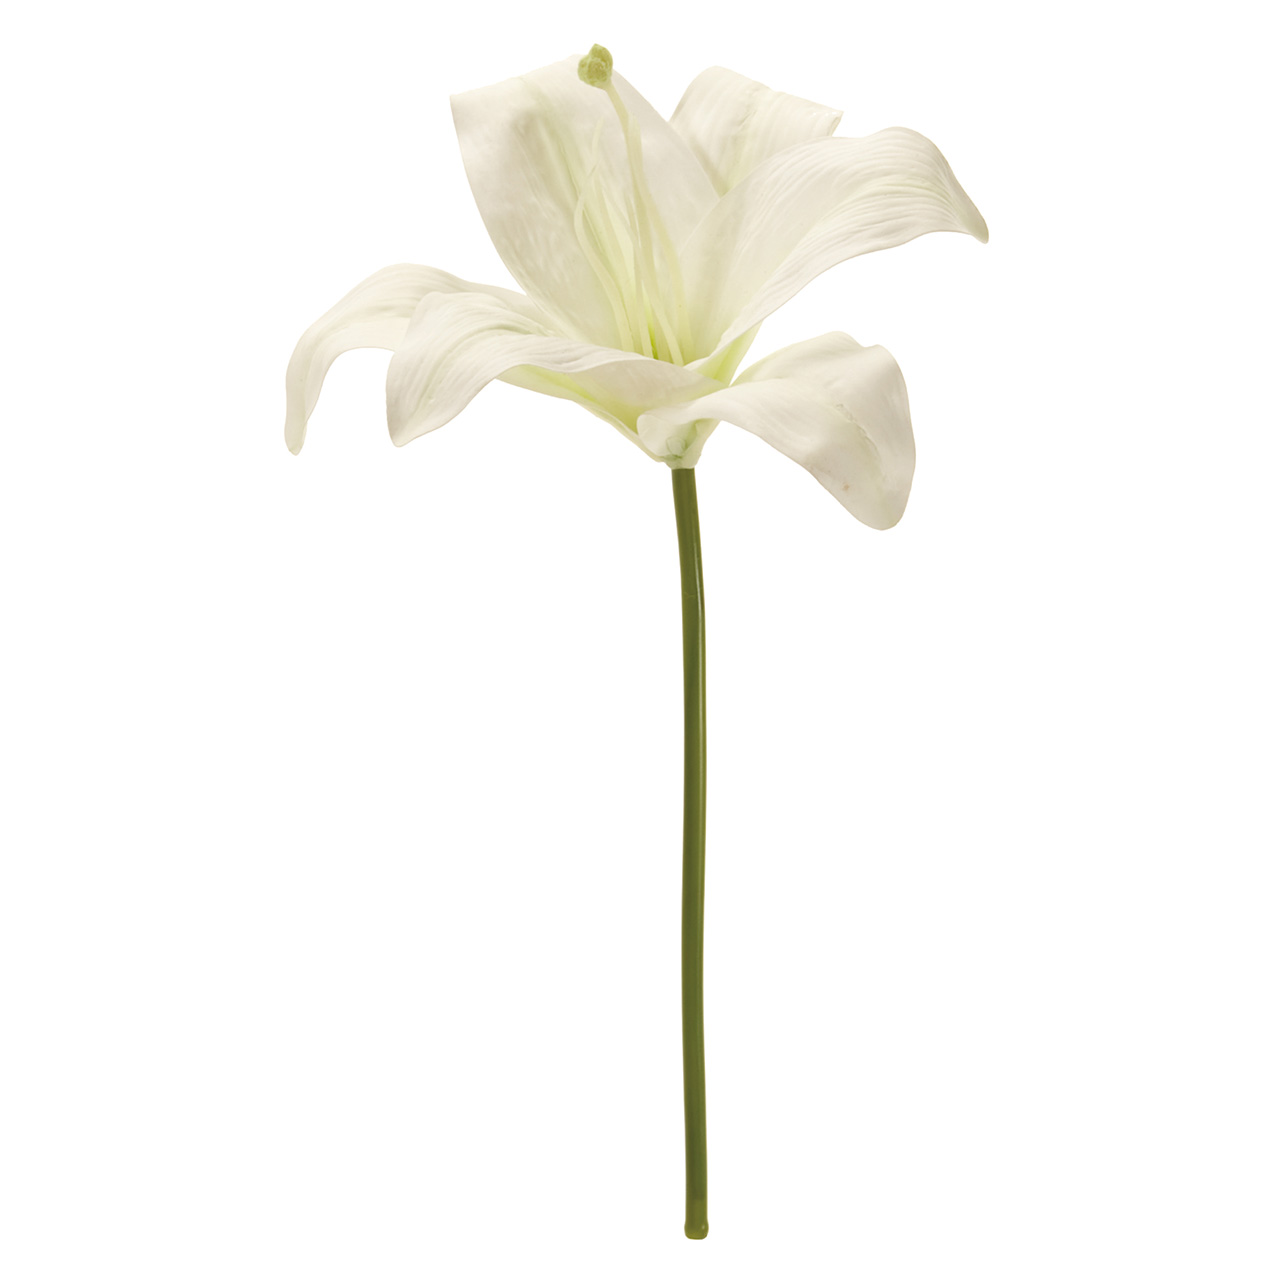 マイフラ 通販 Magiq マリア カサブランカ ピック ホワイト アーティフィシャルフラワー 造花 Fm ユリ 花径 約16 全長 約30cm ホワイト Magiq アーティフィシャルフラワー 造花 全国にmagiq 花器 花資材などをお届けします